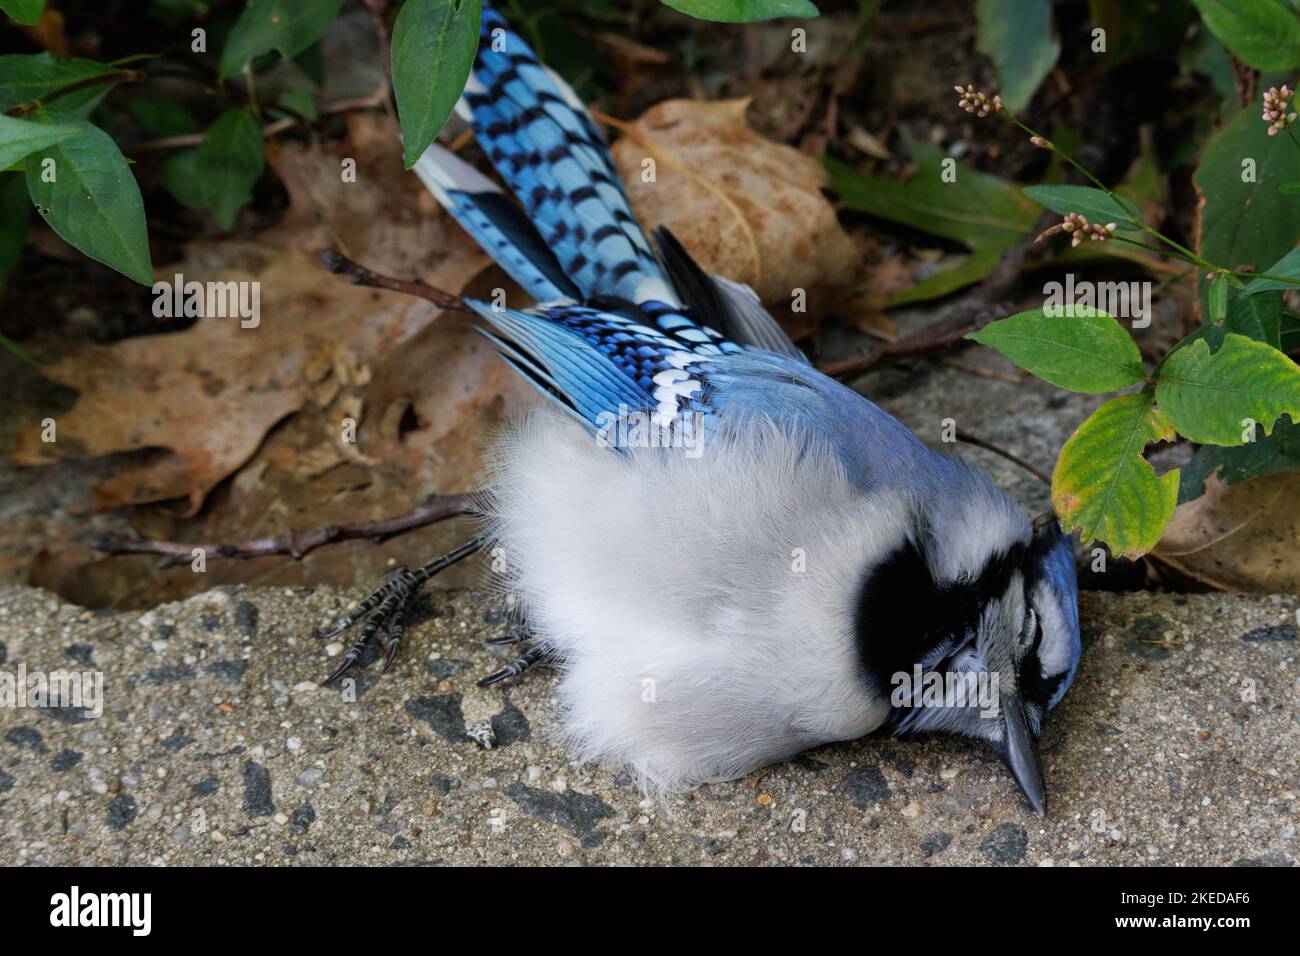 Ein toter blauer eichelhäher-Vogel, der friedlich auf dem Boden eines Stadtparks mit Laub im Hintergrund liegt Stockfoto